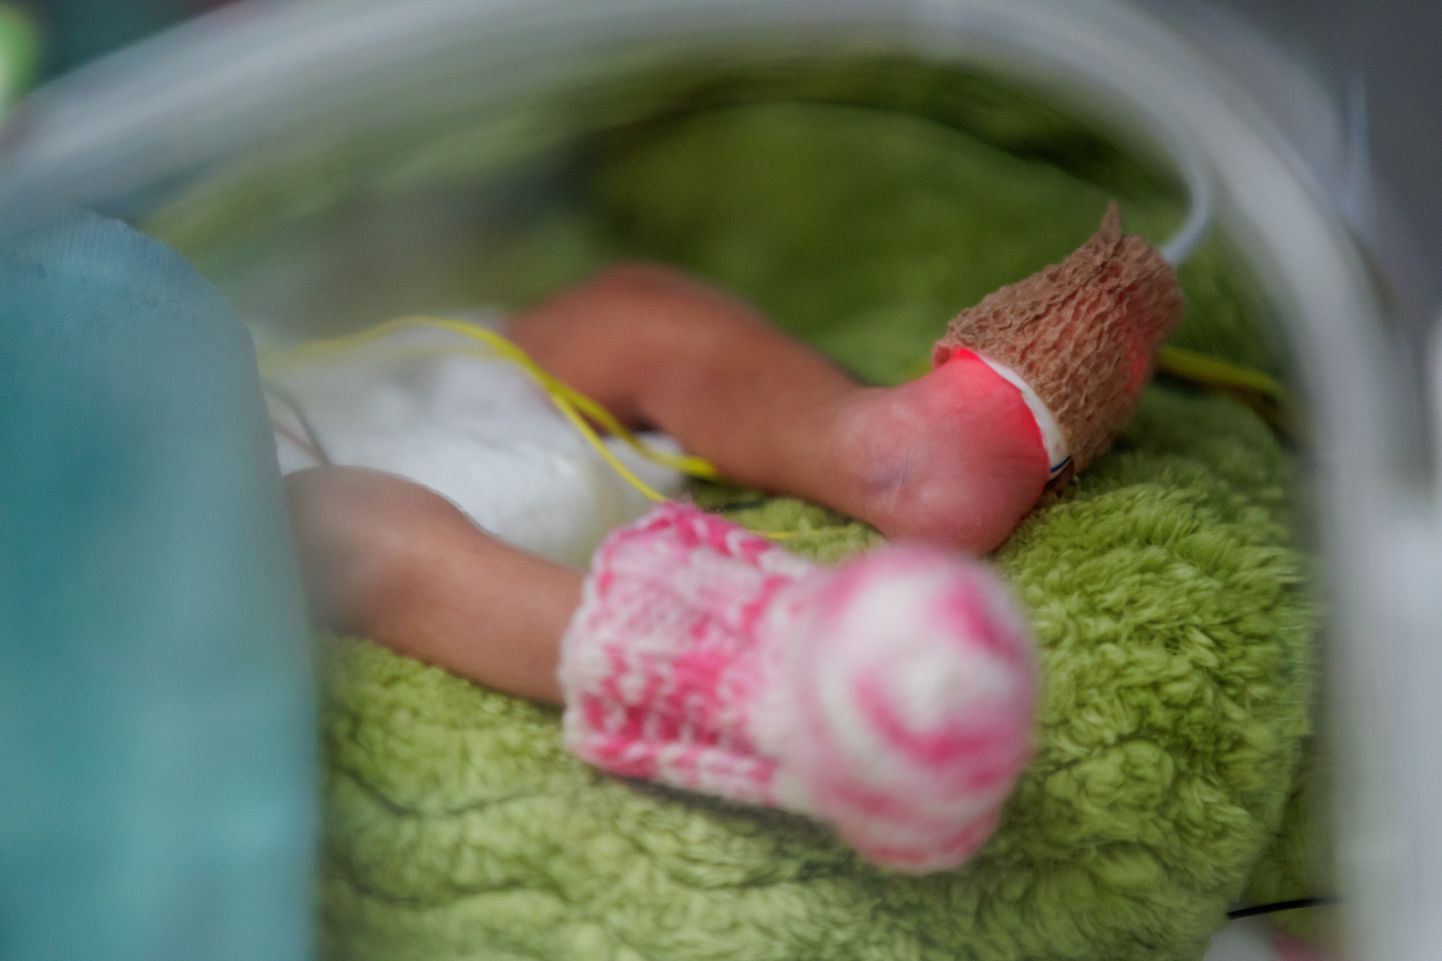 Крошечная девочка на фотографии родилась глубоко недоношенной около недели назад.